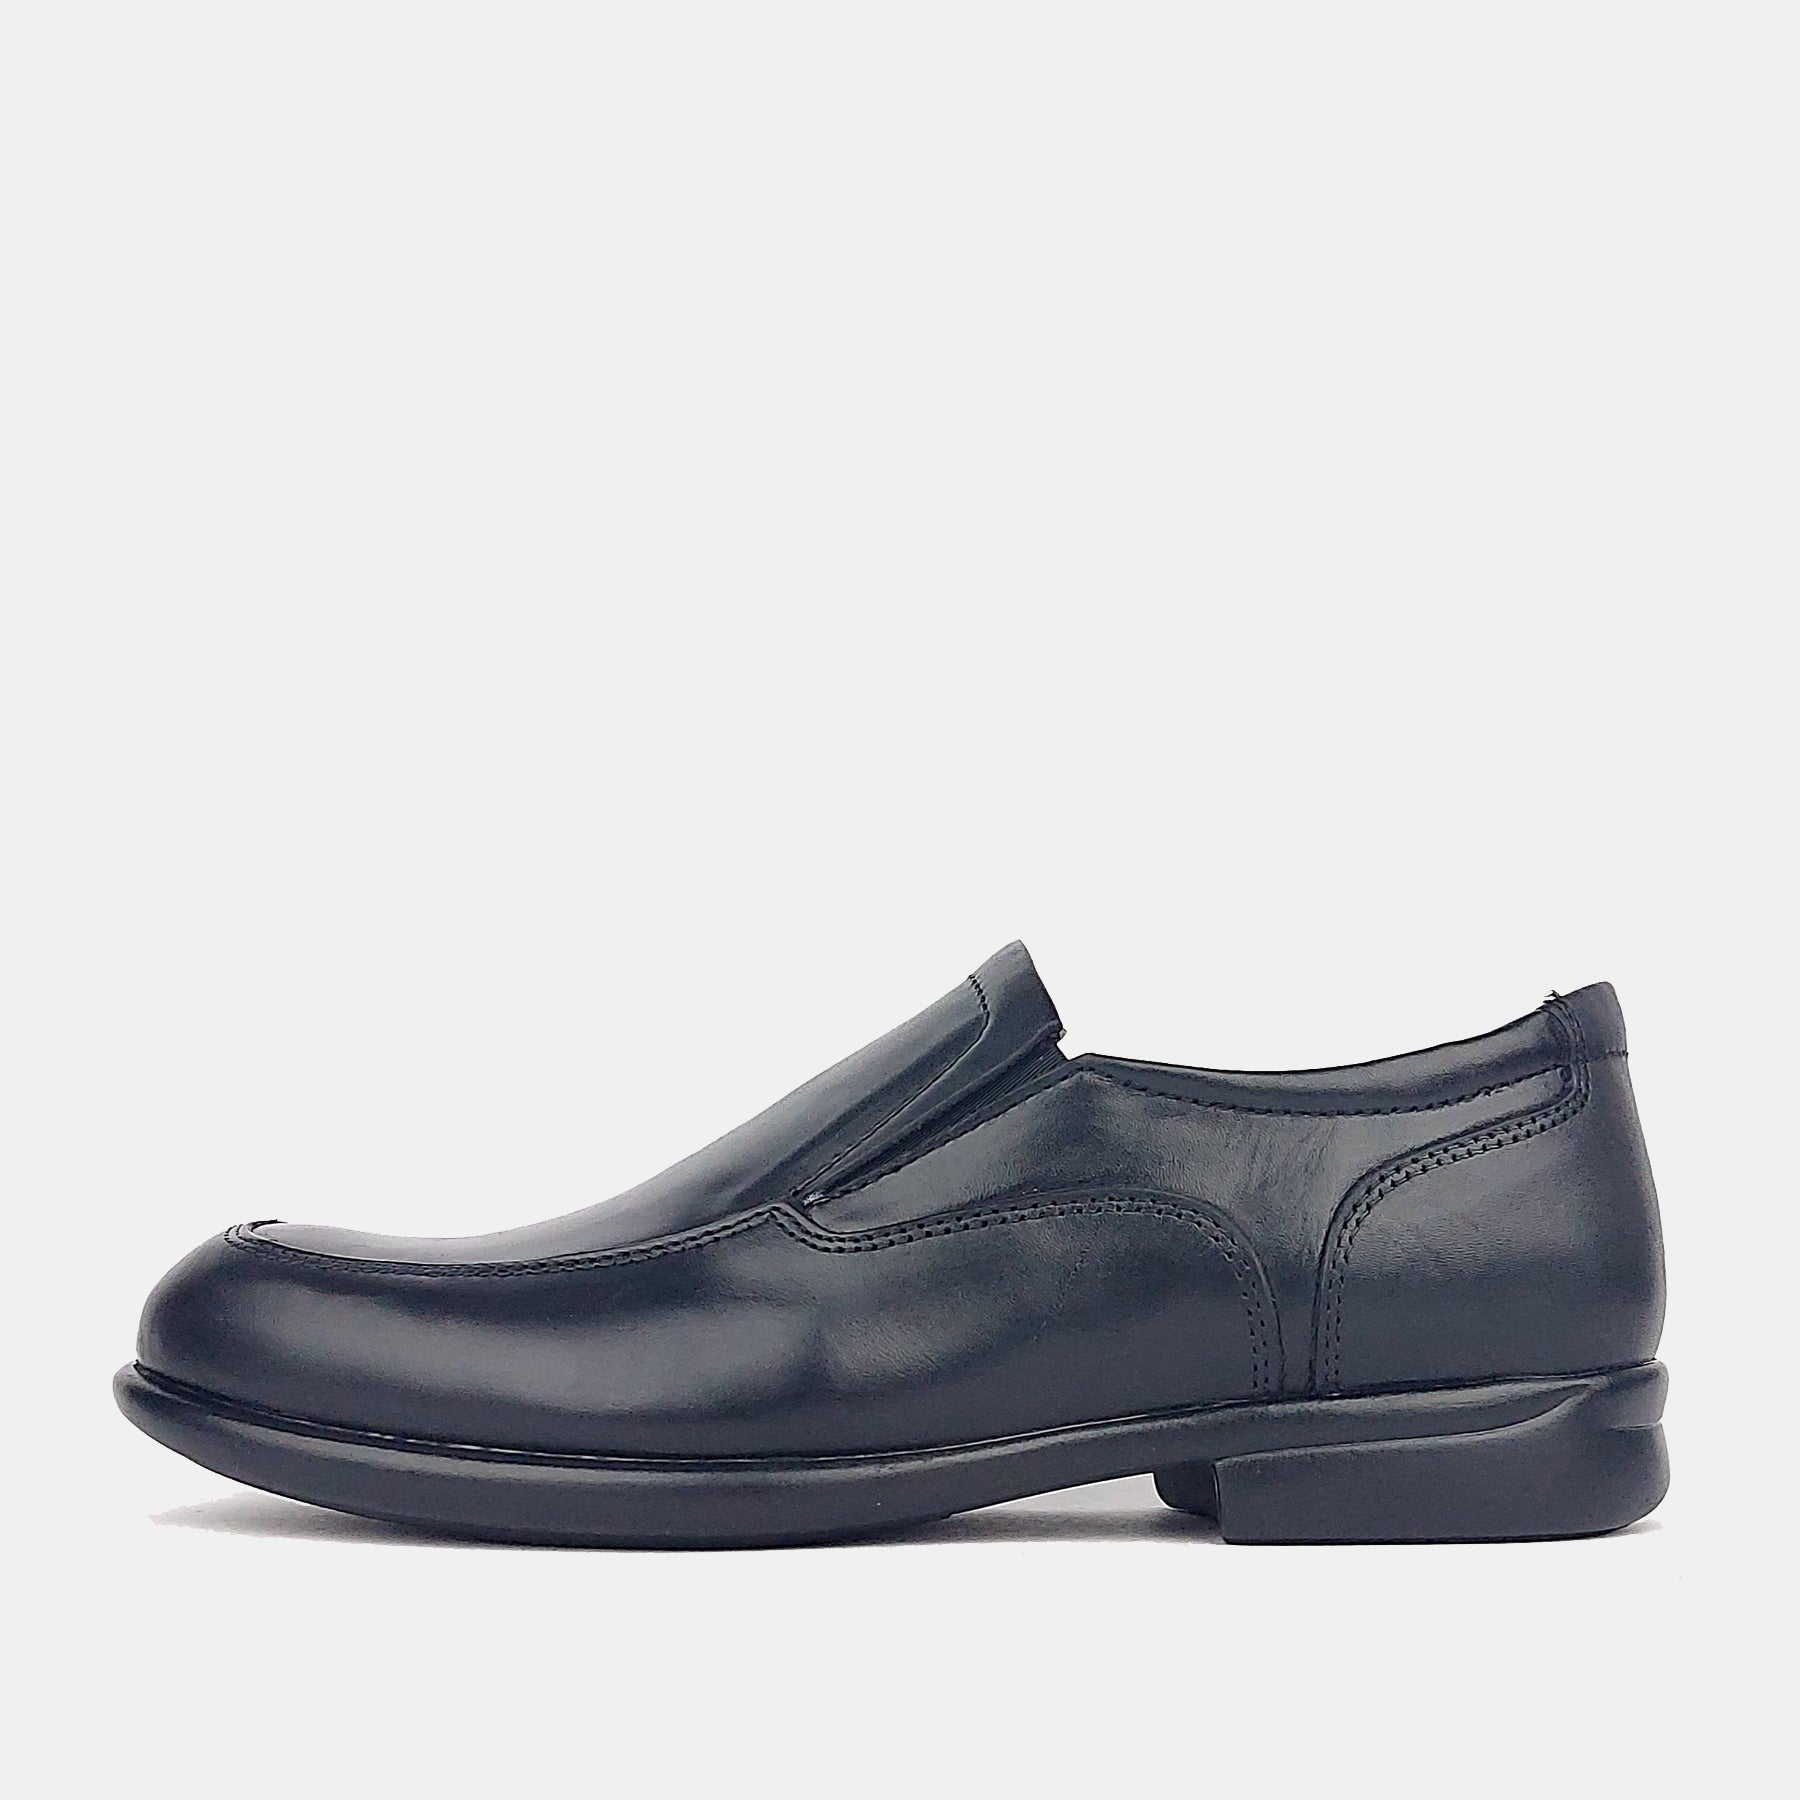 0534 Chaussure cuir noir